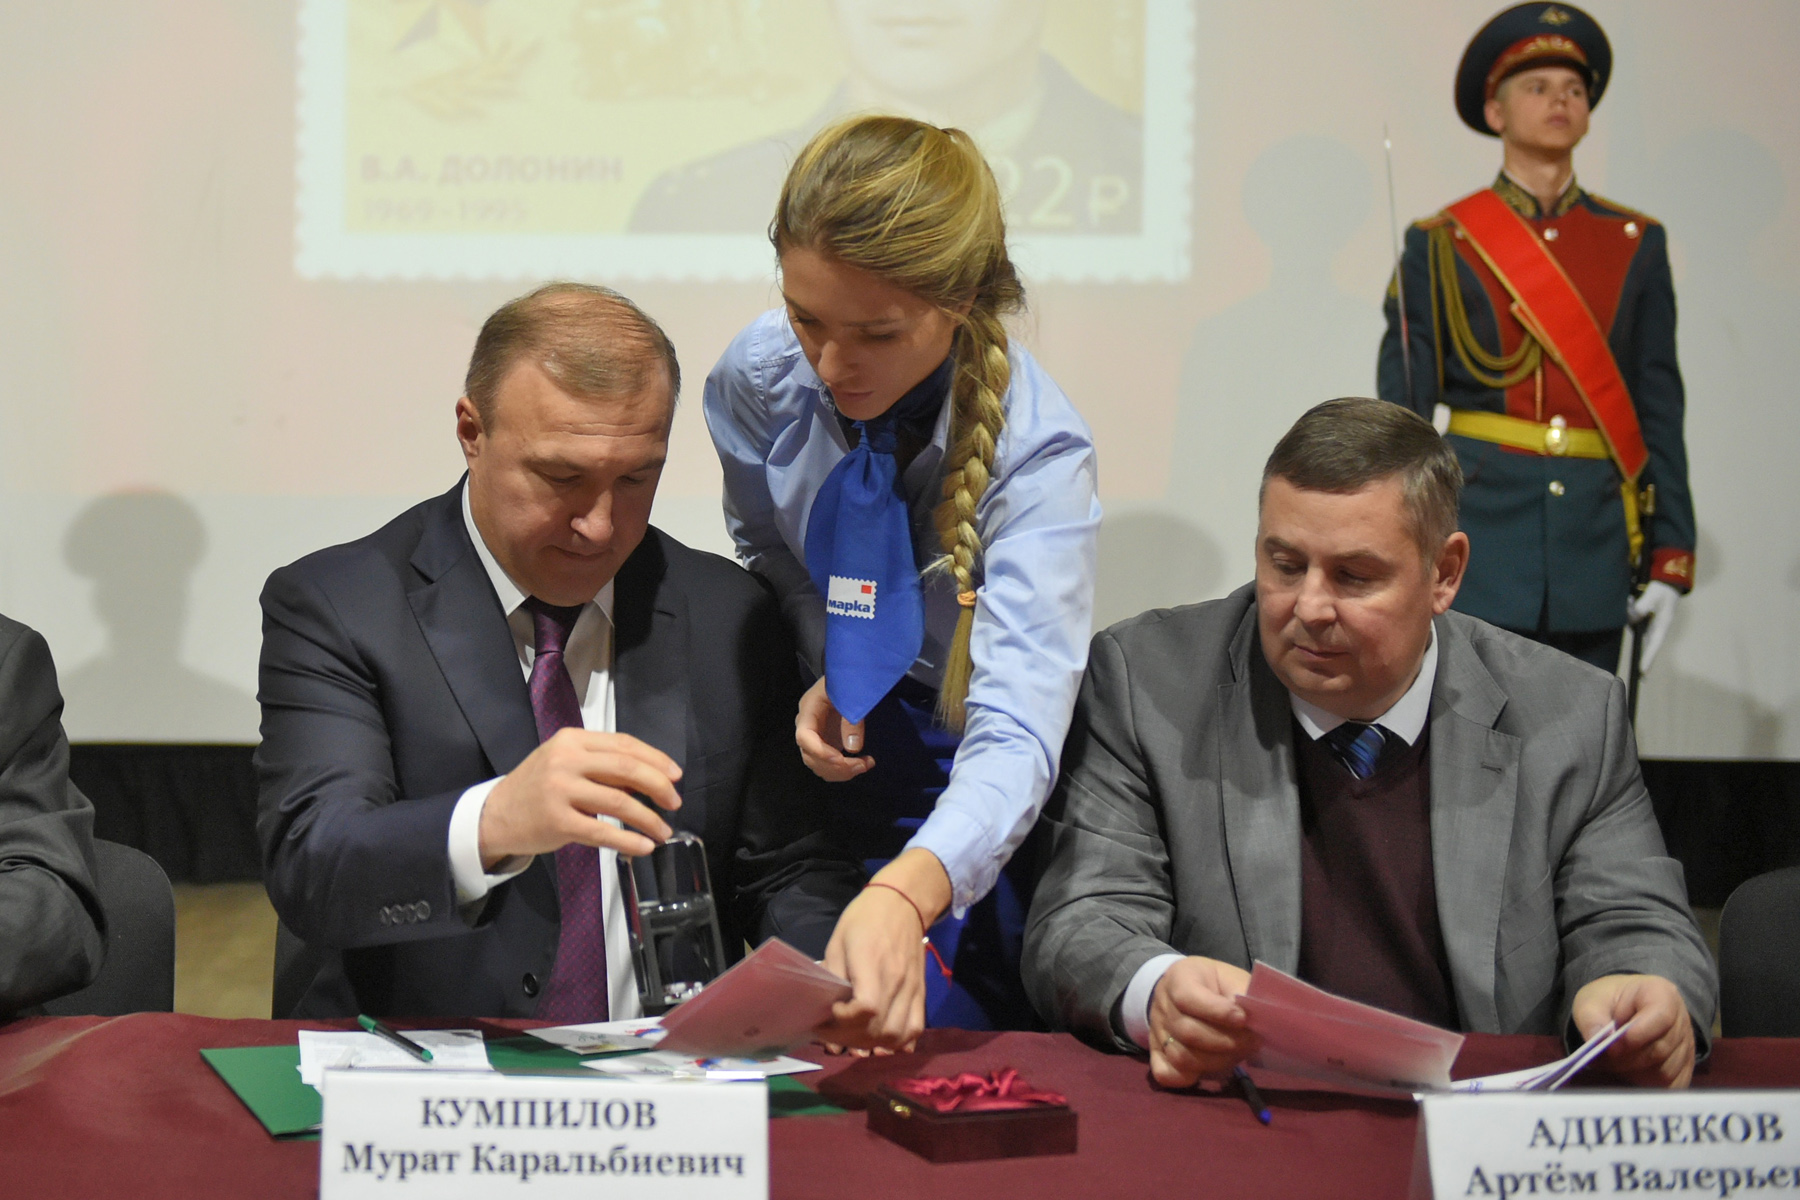 В столице республики прошла церемония гашения почтовой марки из серии «Герои России»